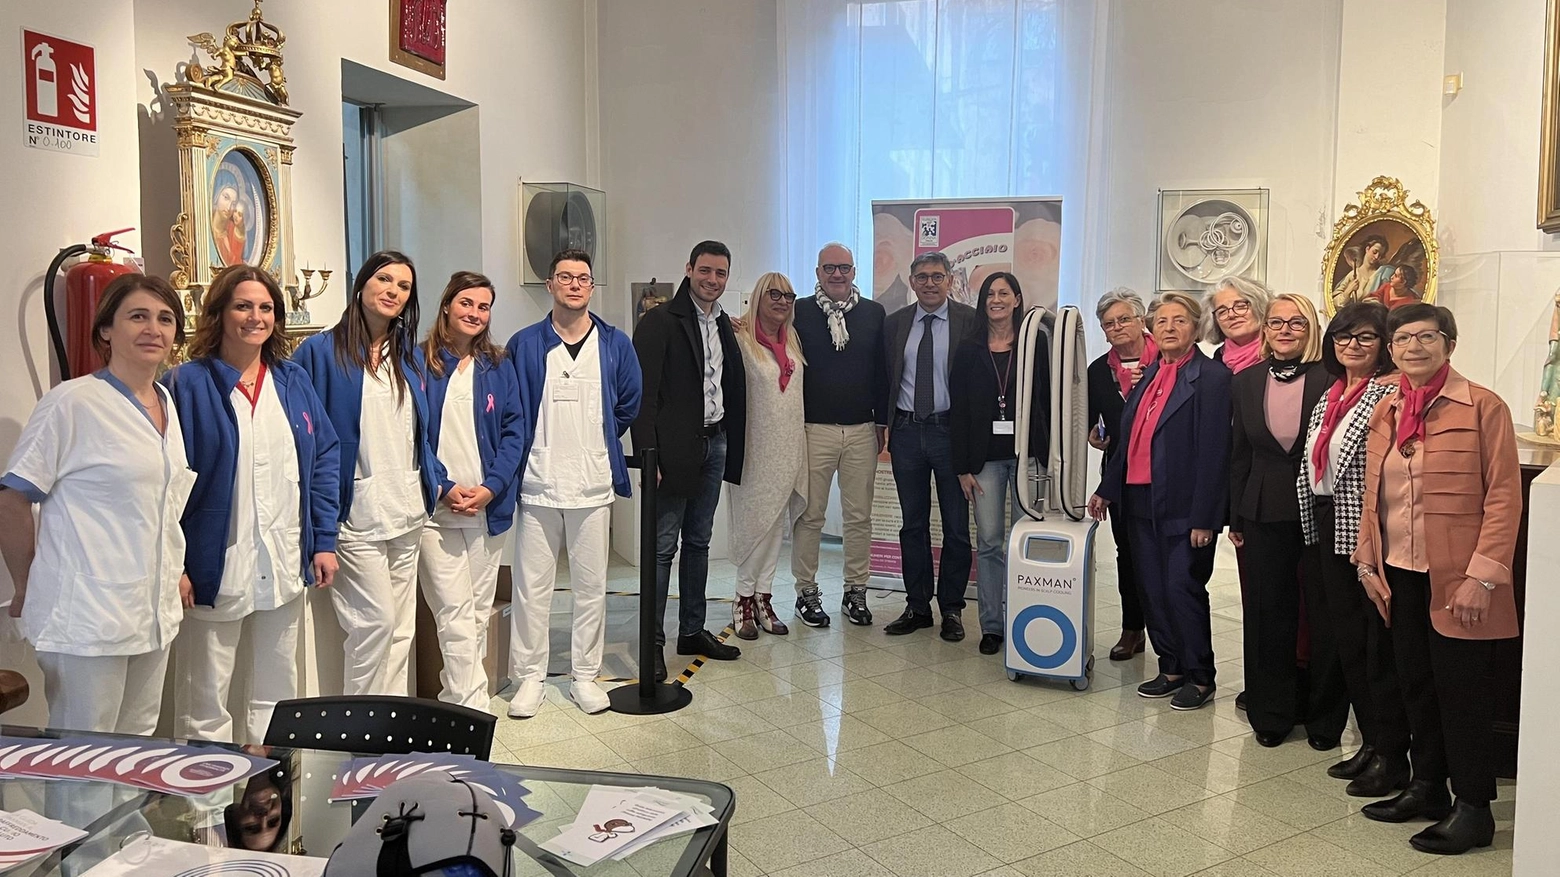 Cerimonia di ringraziamento per donazione apparecchio prevenzione alopecia all'Oncologia di Faenza grazie a associazione e aziende locali.